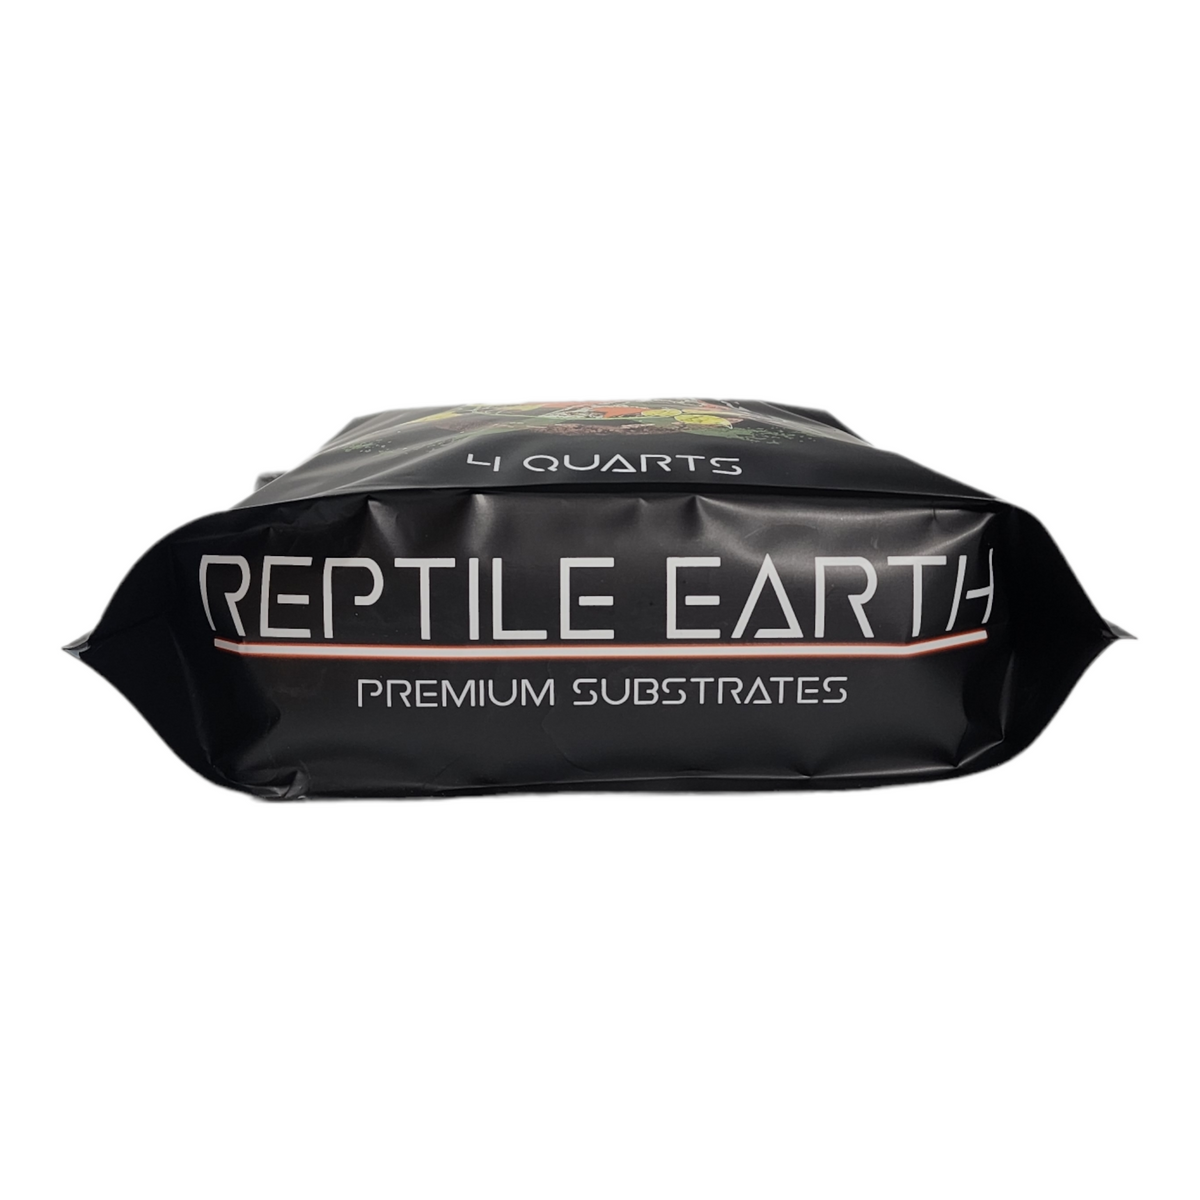 Reptile Earth - BIO MIX Premium Substrates - Reptile Deli Inc.